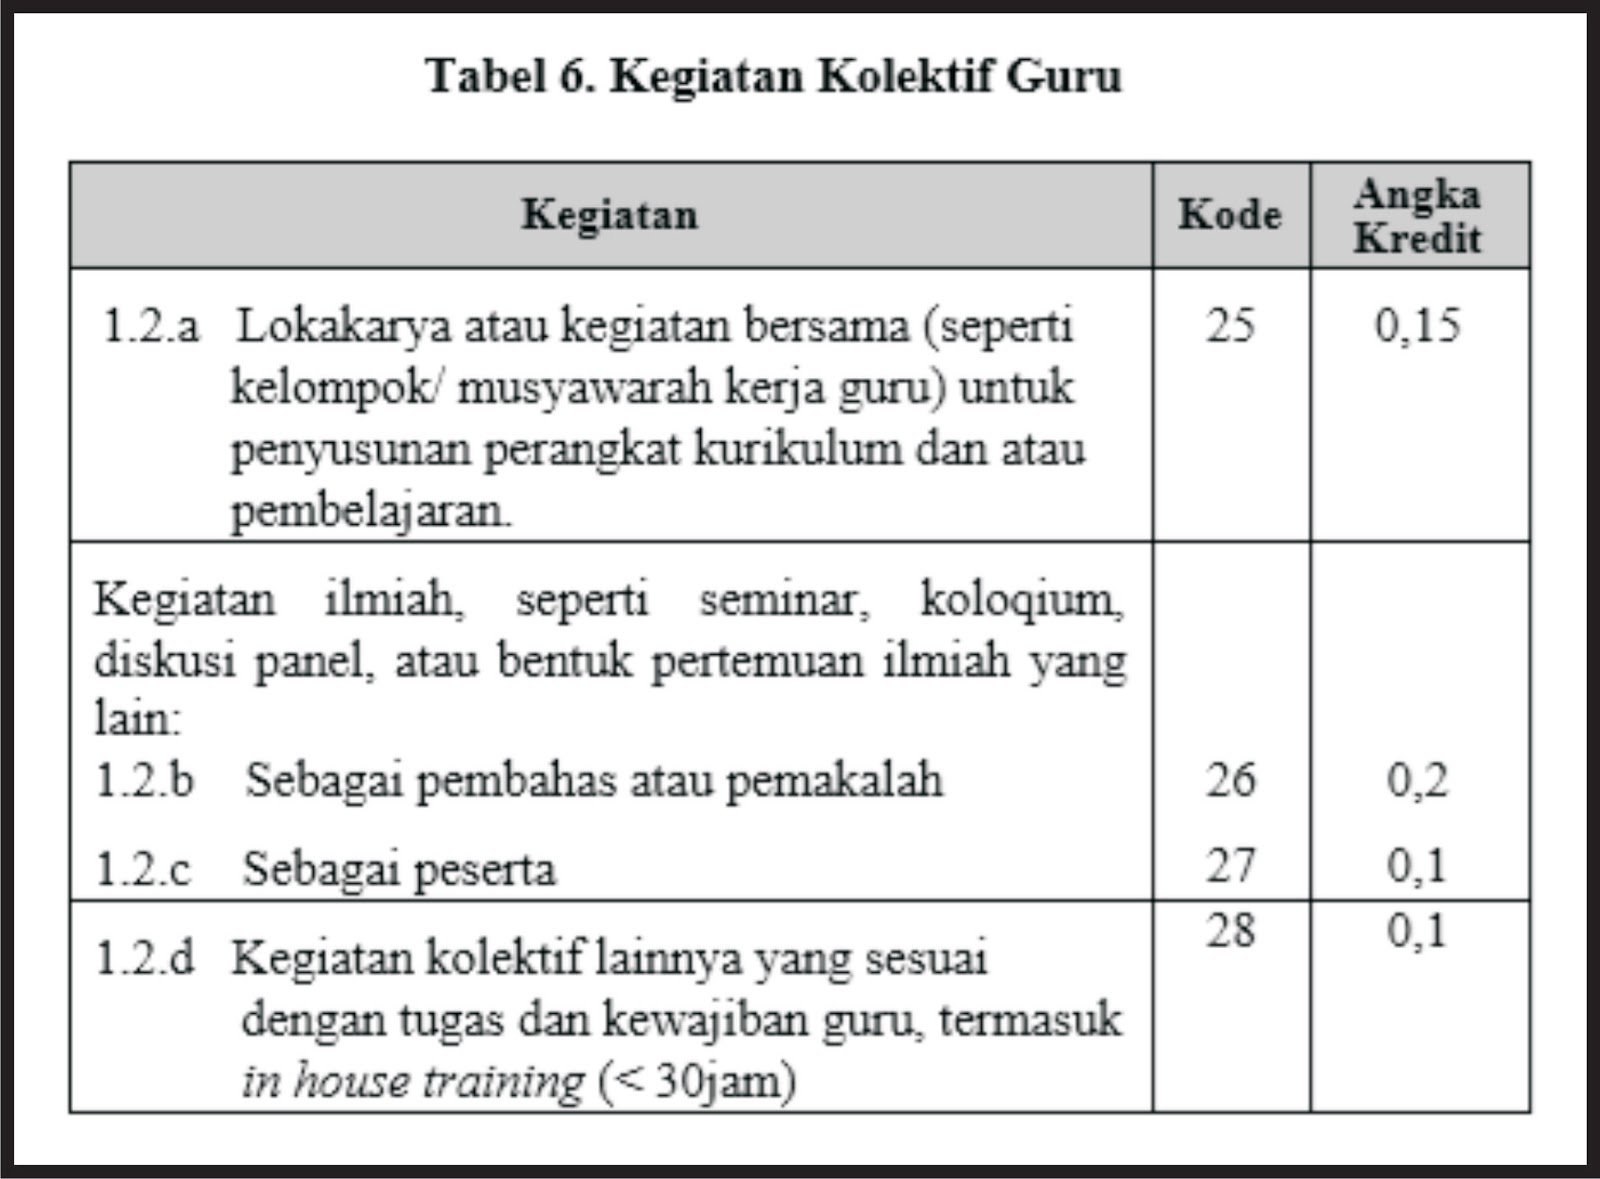 tabel kegiatan kolektif guru